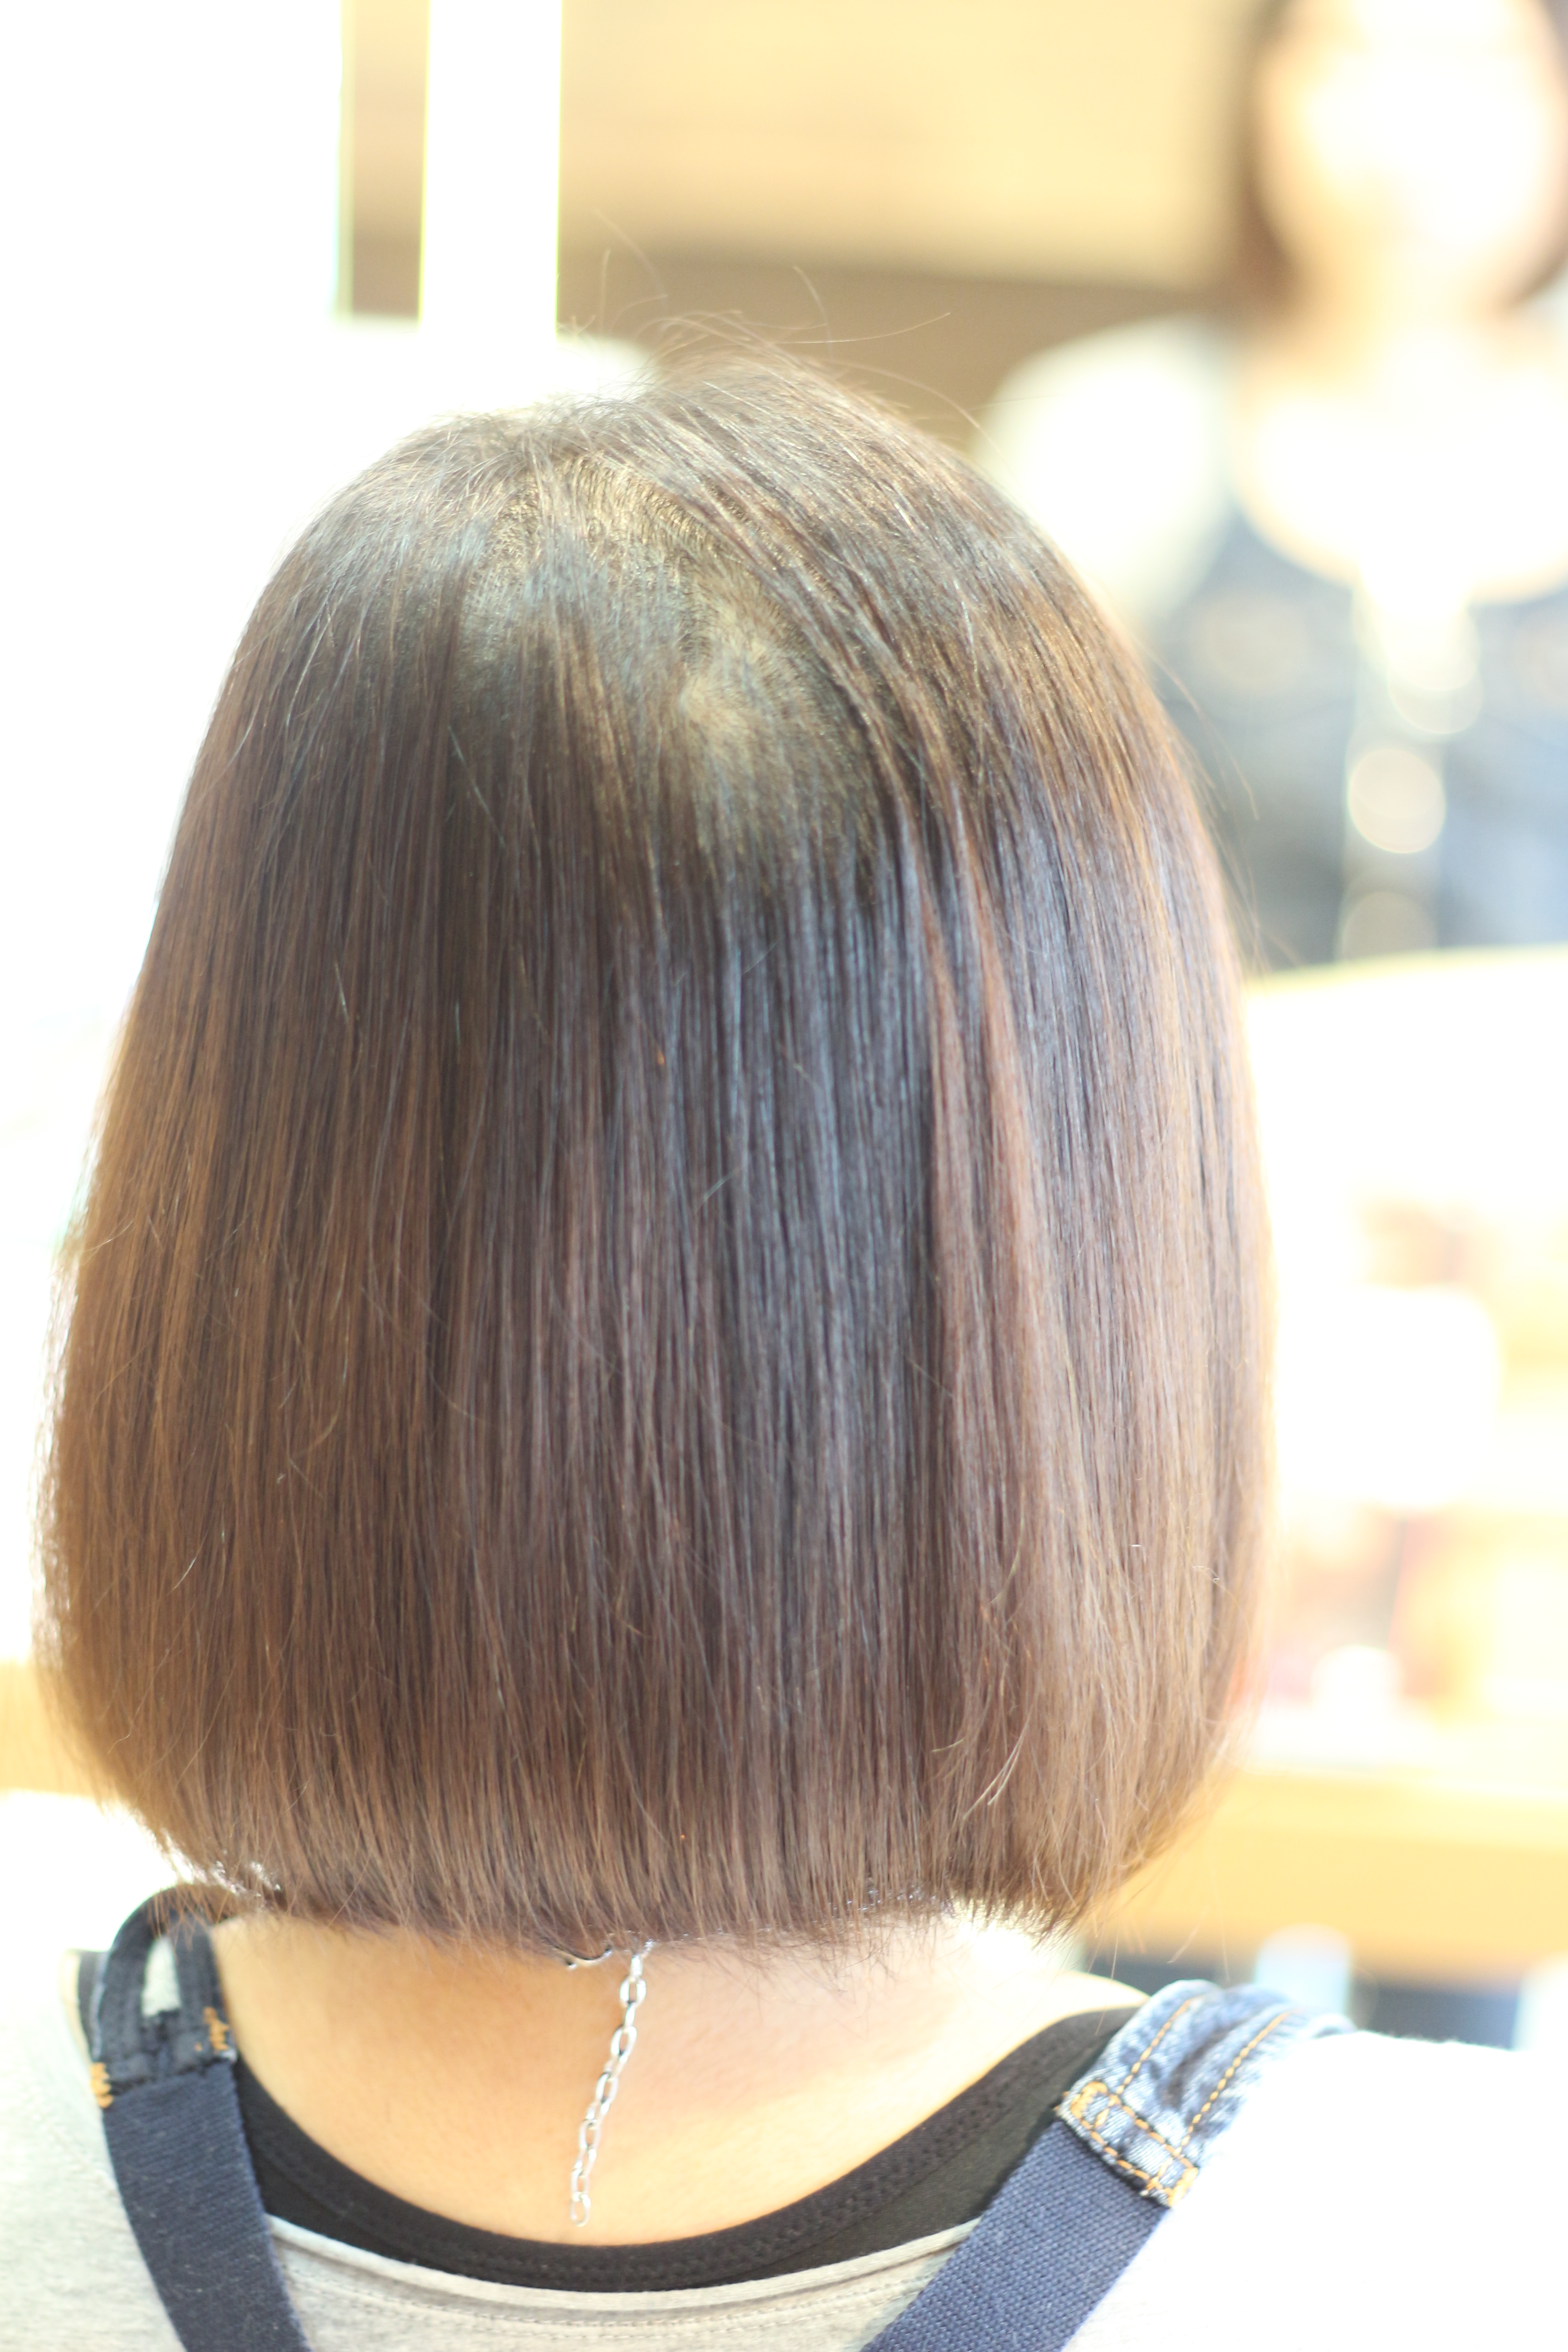 髪の毛が細くてボリュームが出ないクセ毛の縮毛矯正 座間 相模原 クセ毛美容師 イシカワのブログ